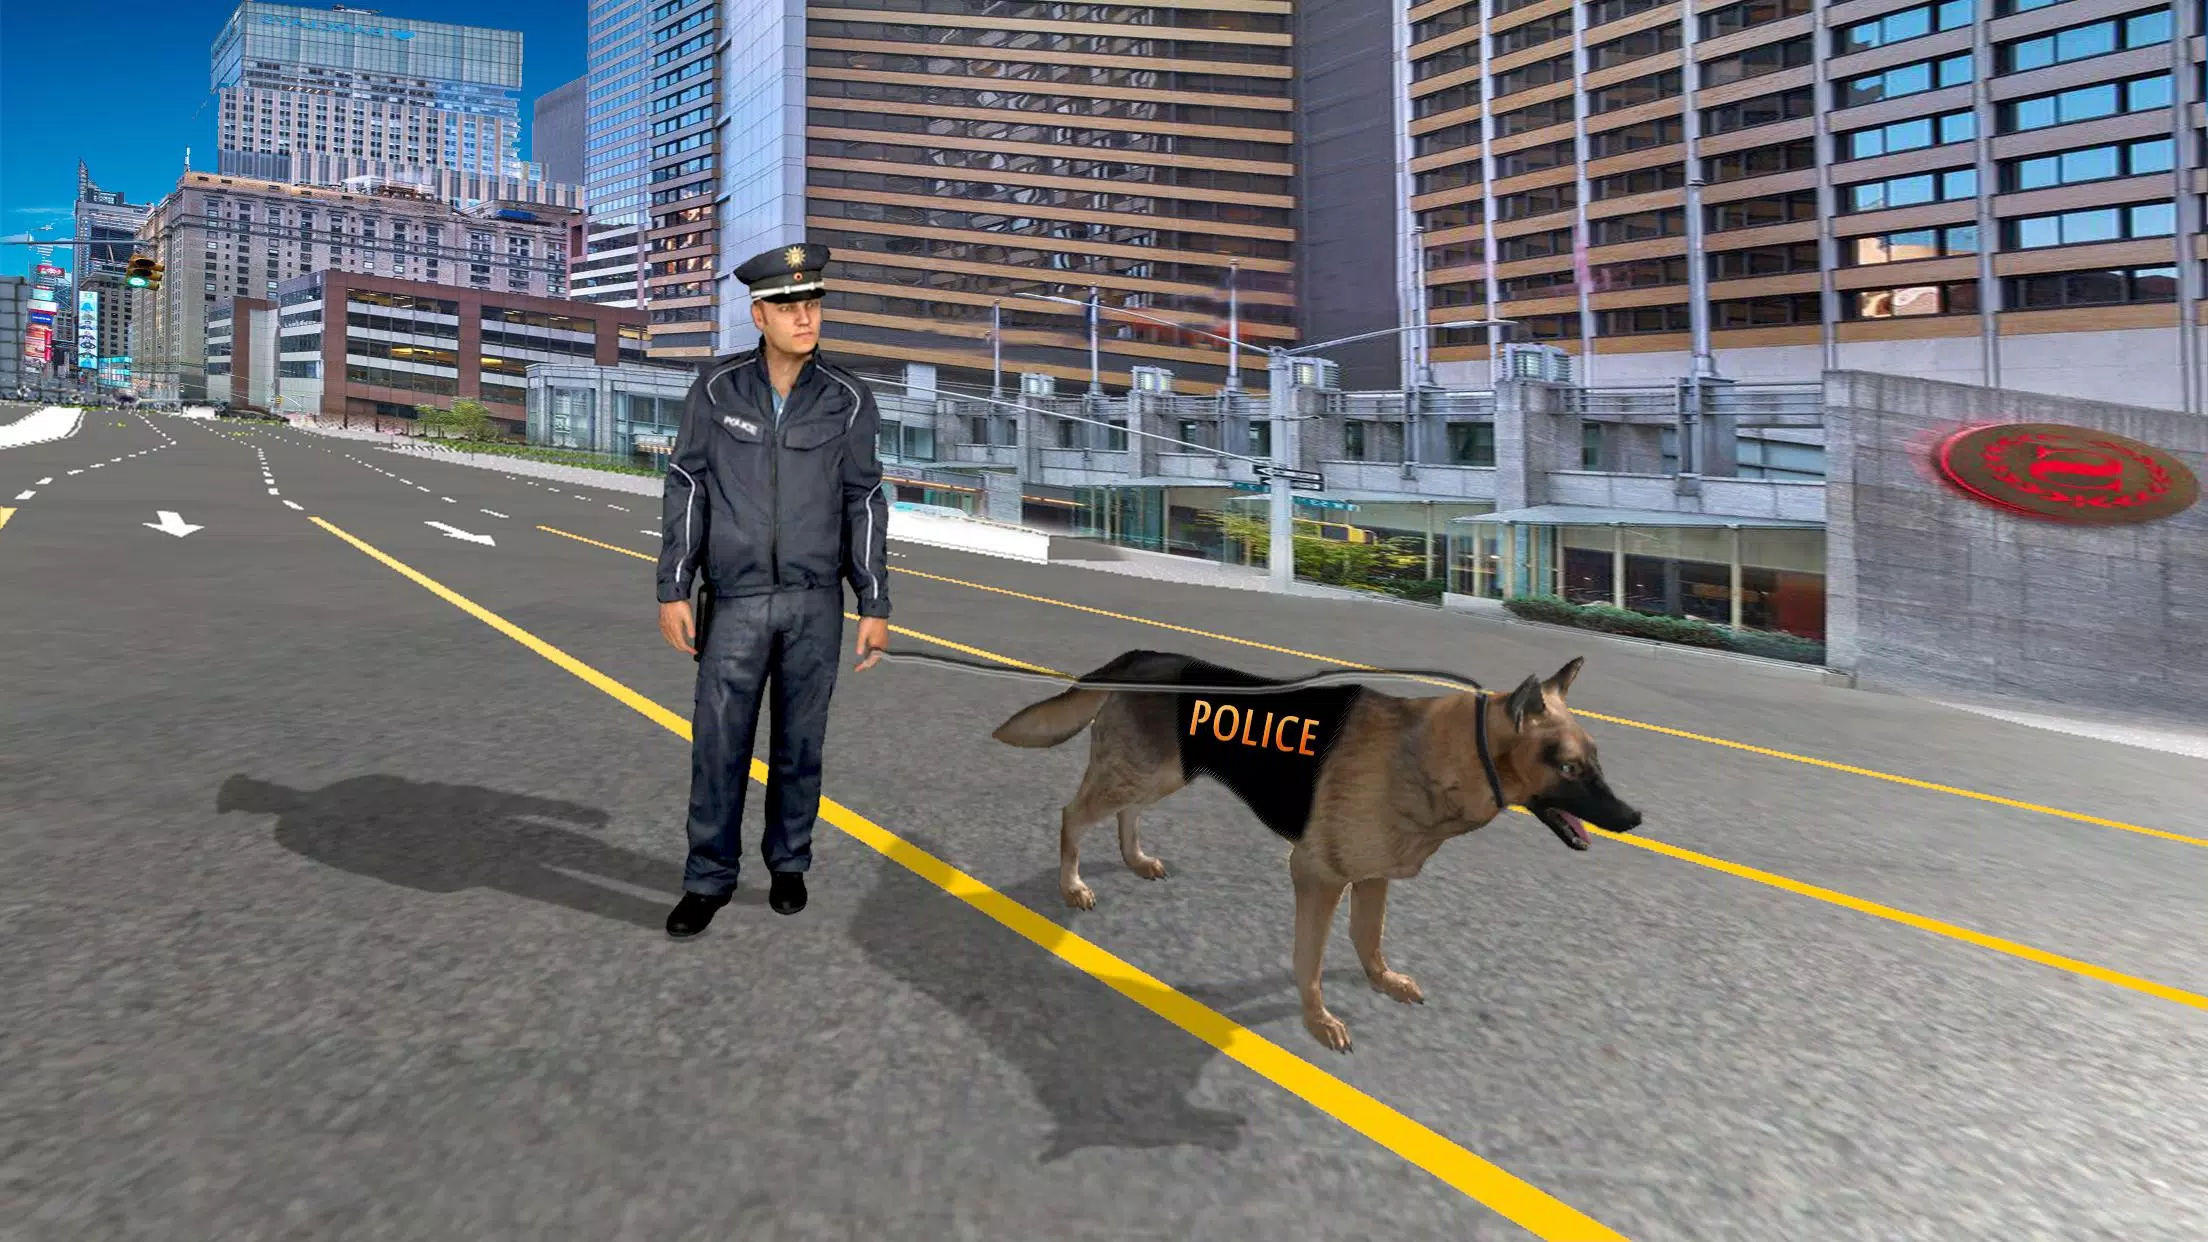 Rodovia Polícia correr atrás Policial Simulador 2018 Alto Rapidez Policial  Carro Grappler Gangster Escapar Aventura Jogos Livre Para  Crianças::Appstore for Android